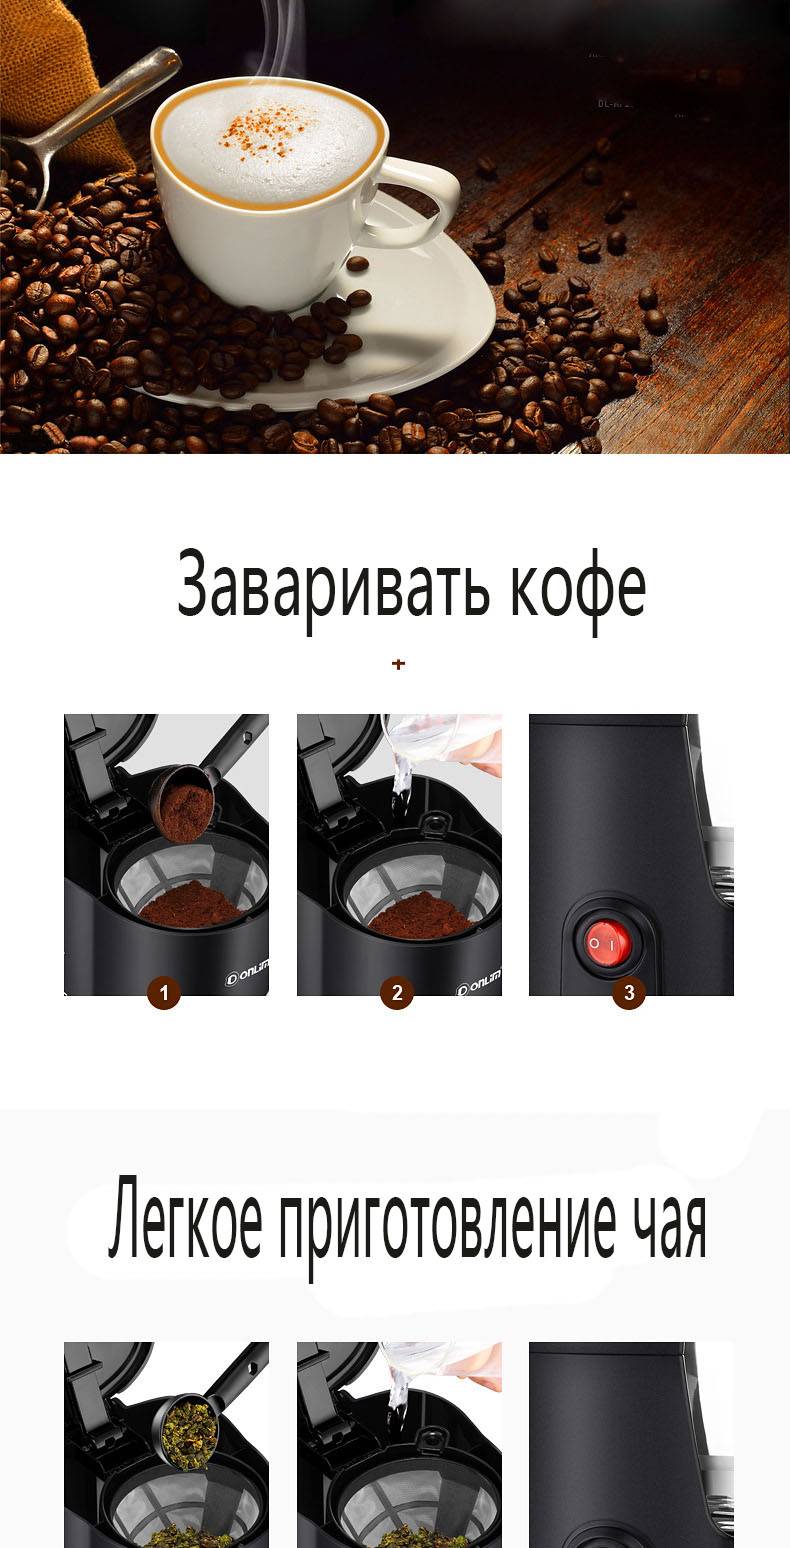 Капельная кофеварка